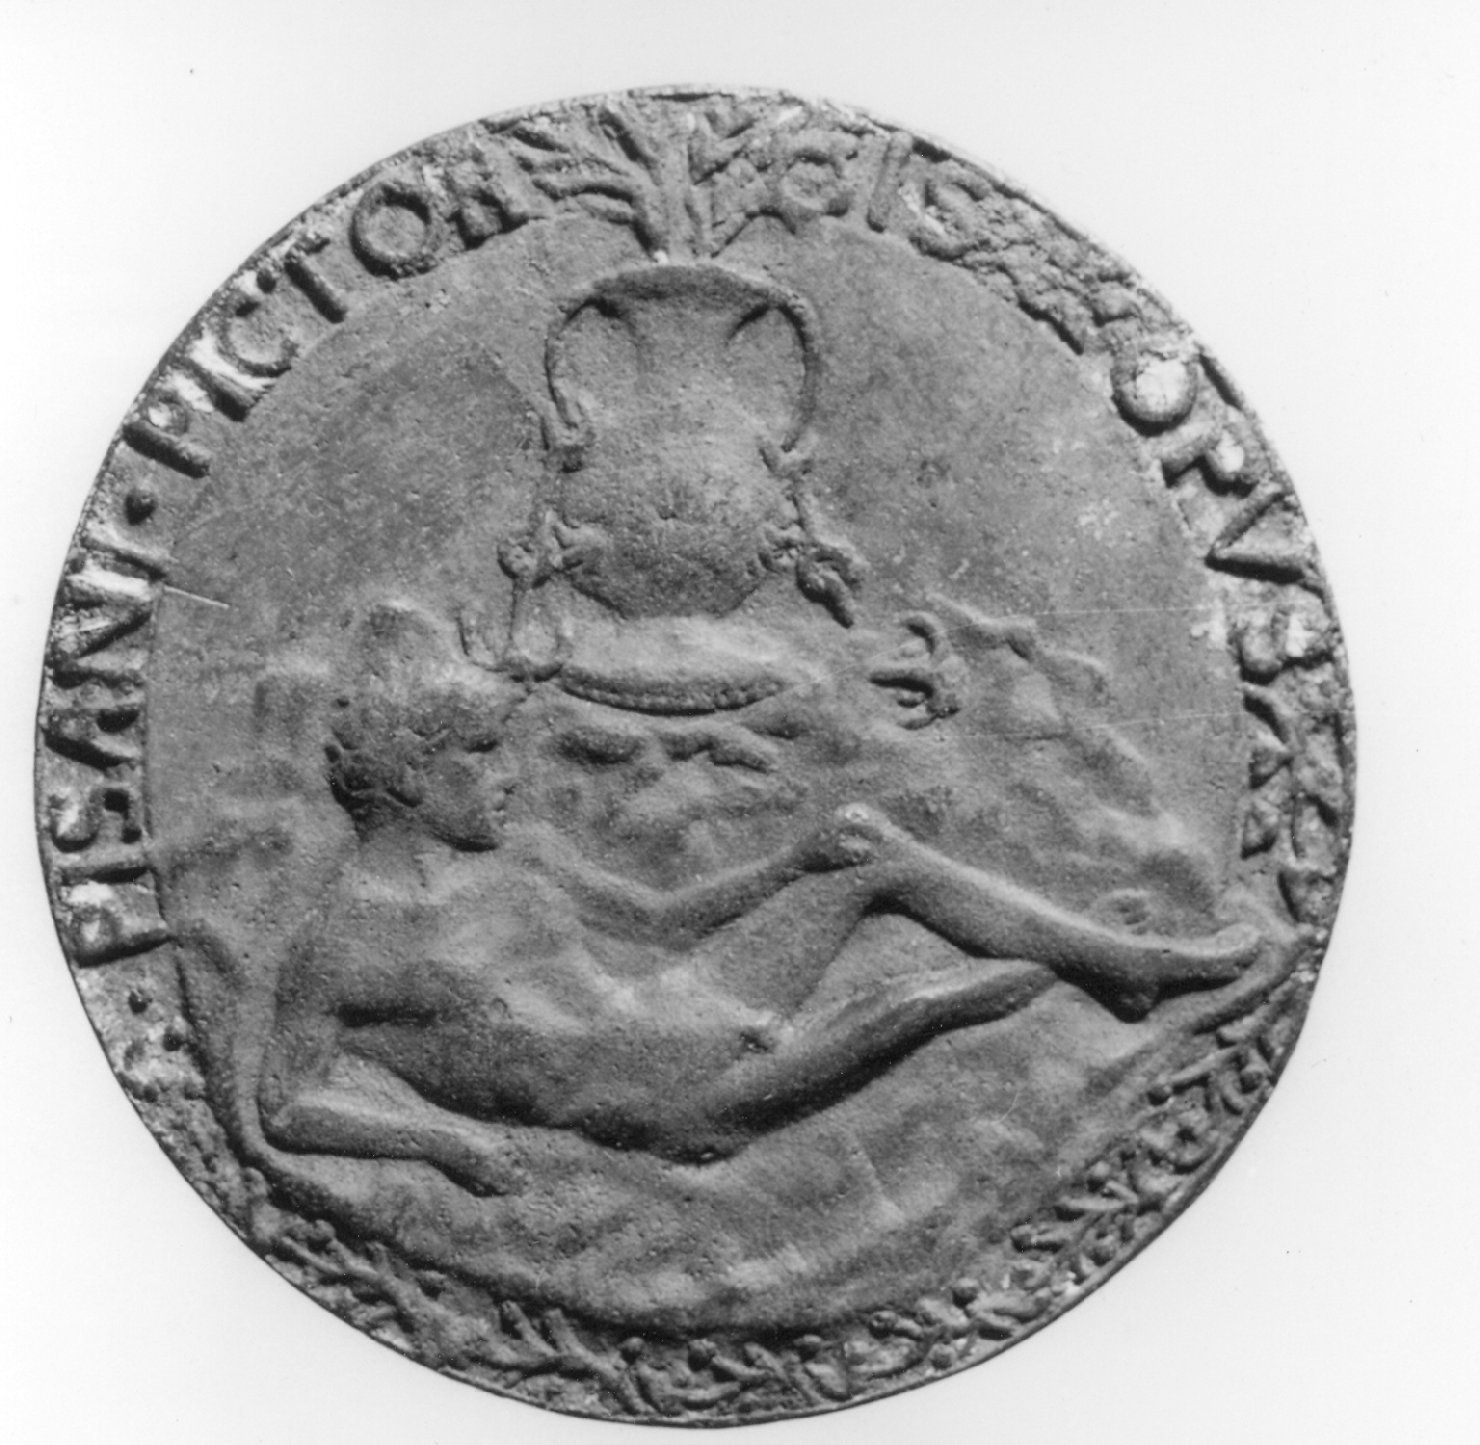 giovane nudo (medaglia, elemento d'insieme) di Antonio di Puccio Pisano detto Pisanello (secc. XIV/ XV)